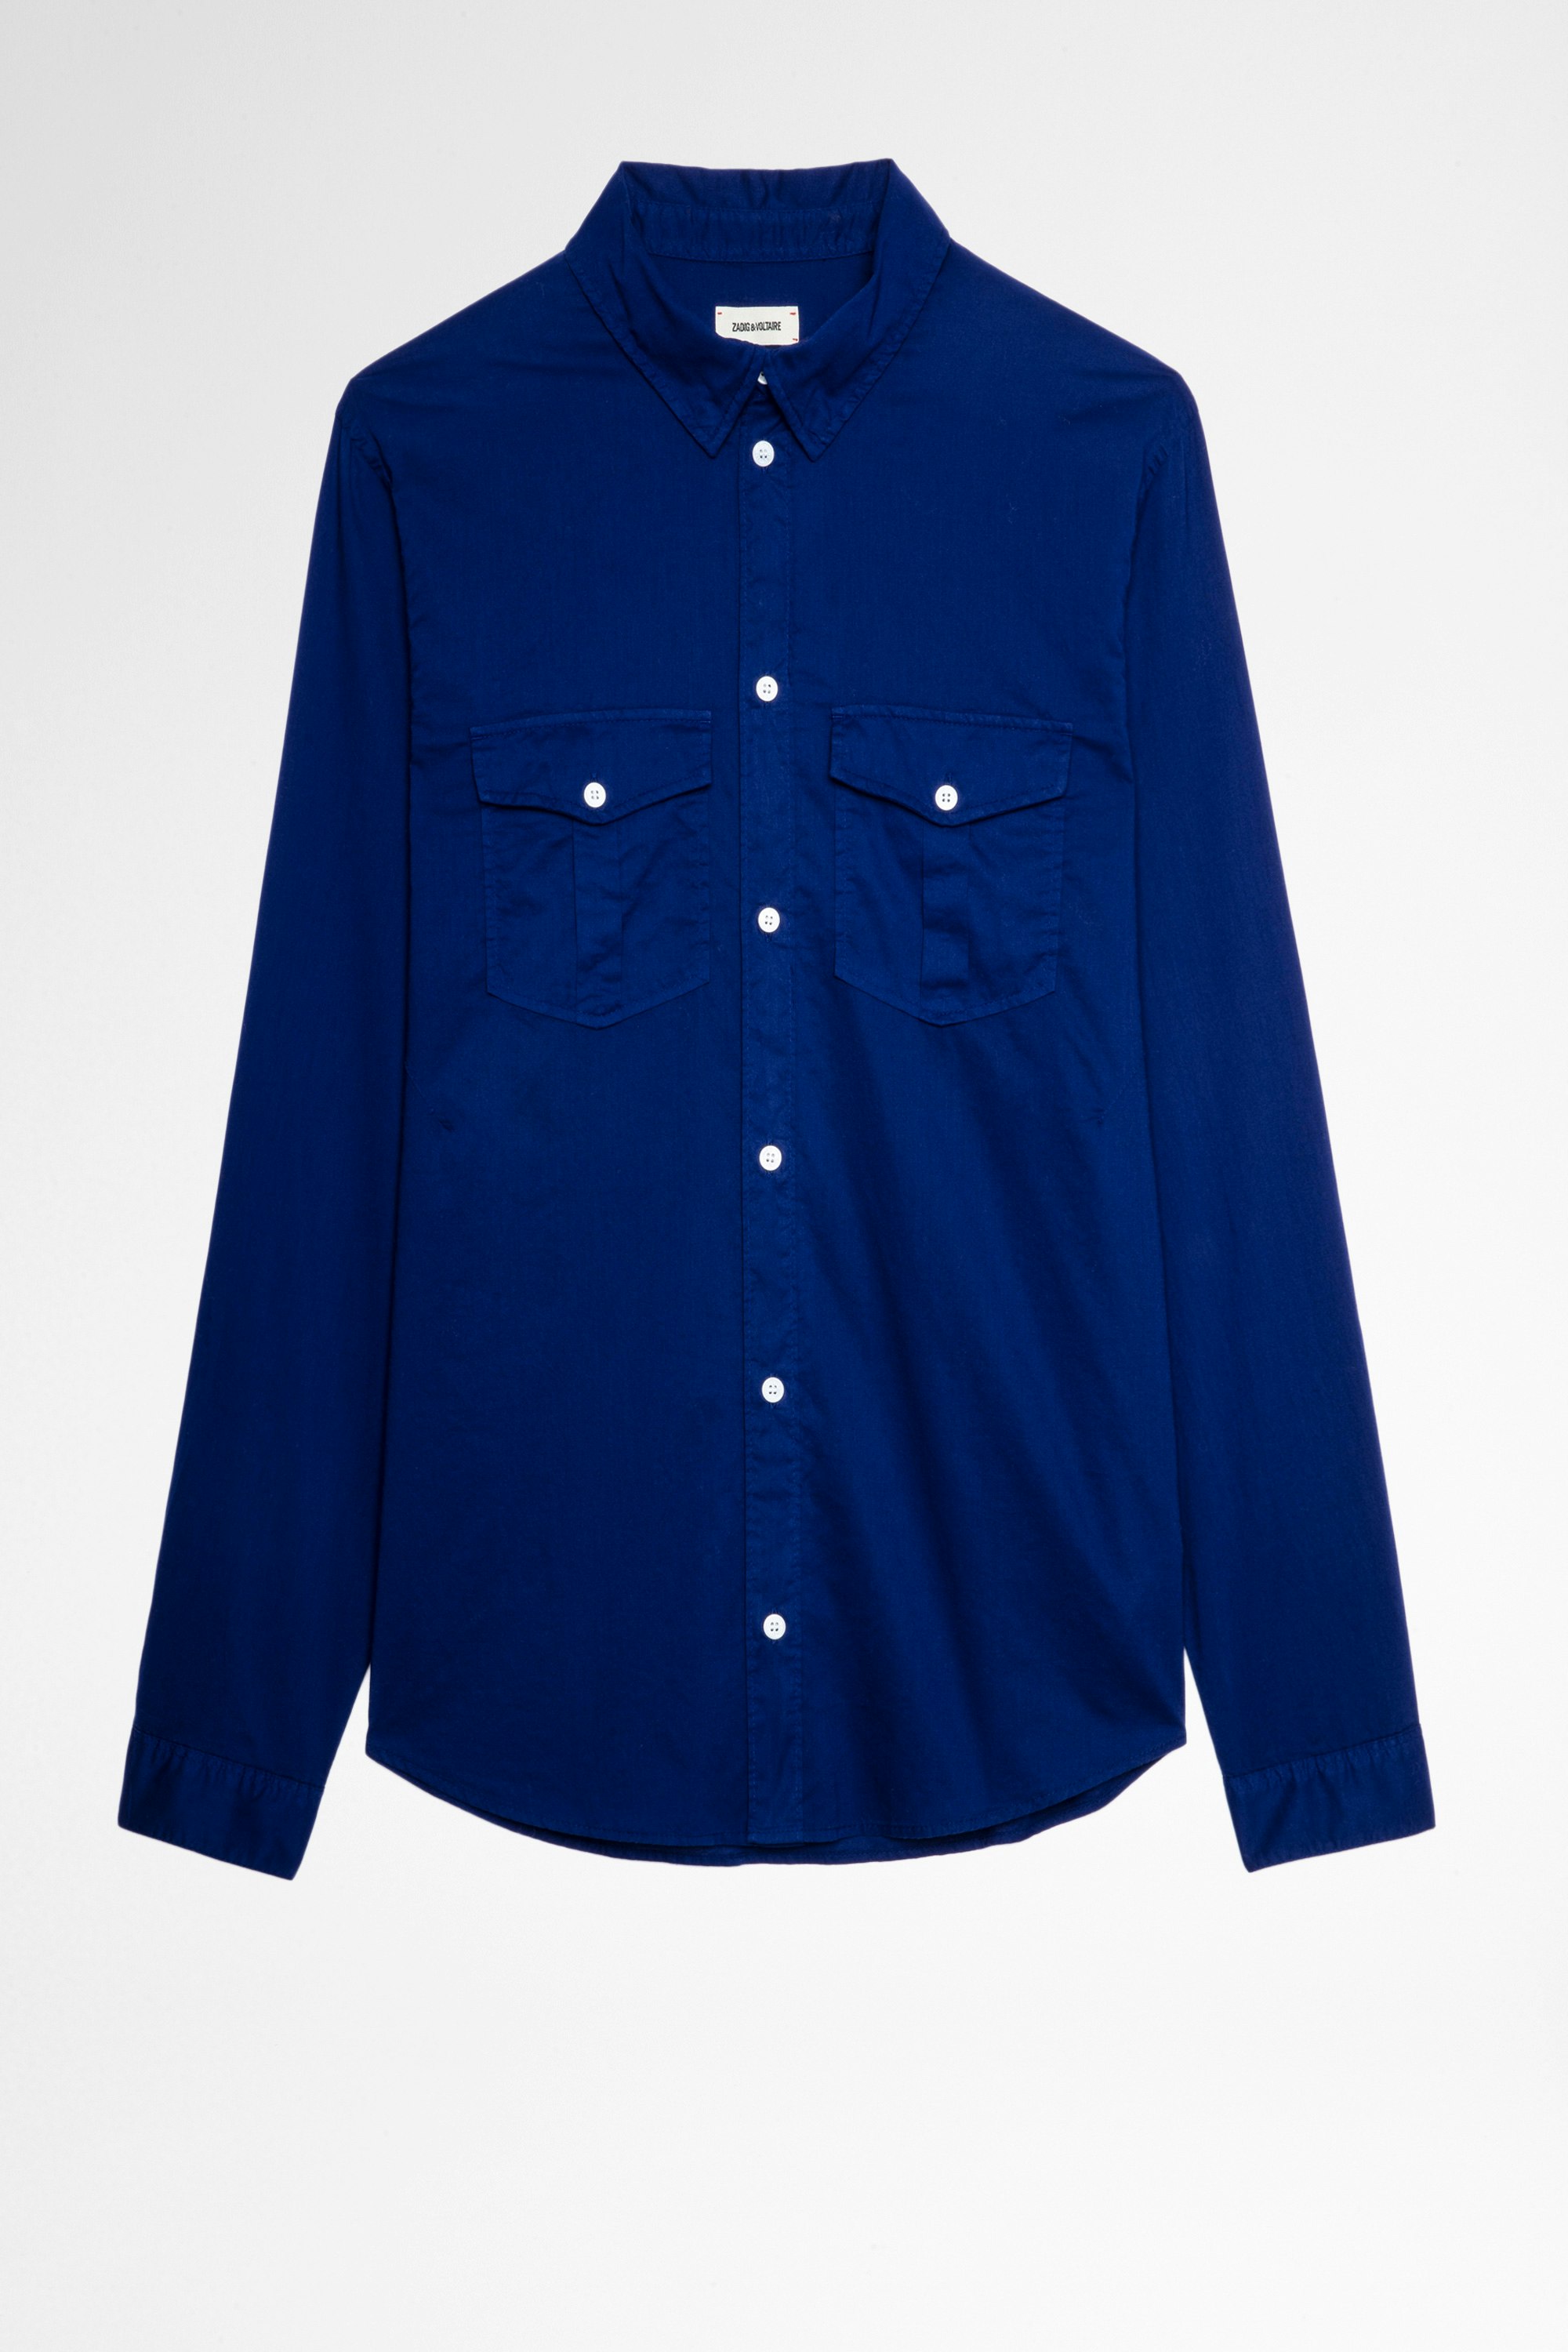 Camicia Thibaut Camicia in cotone blu reale uomo